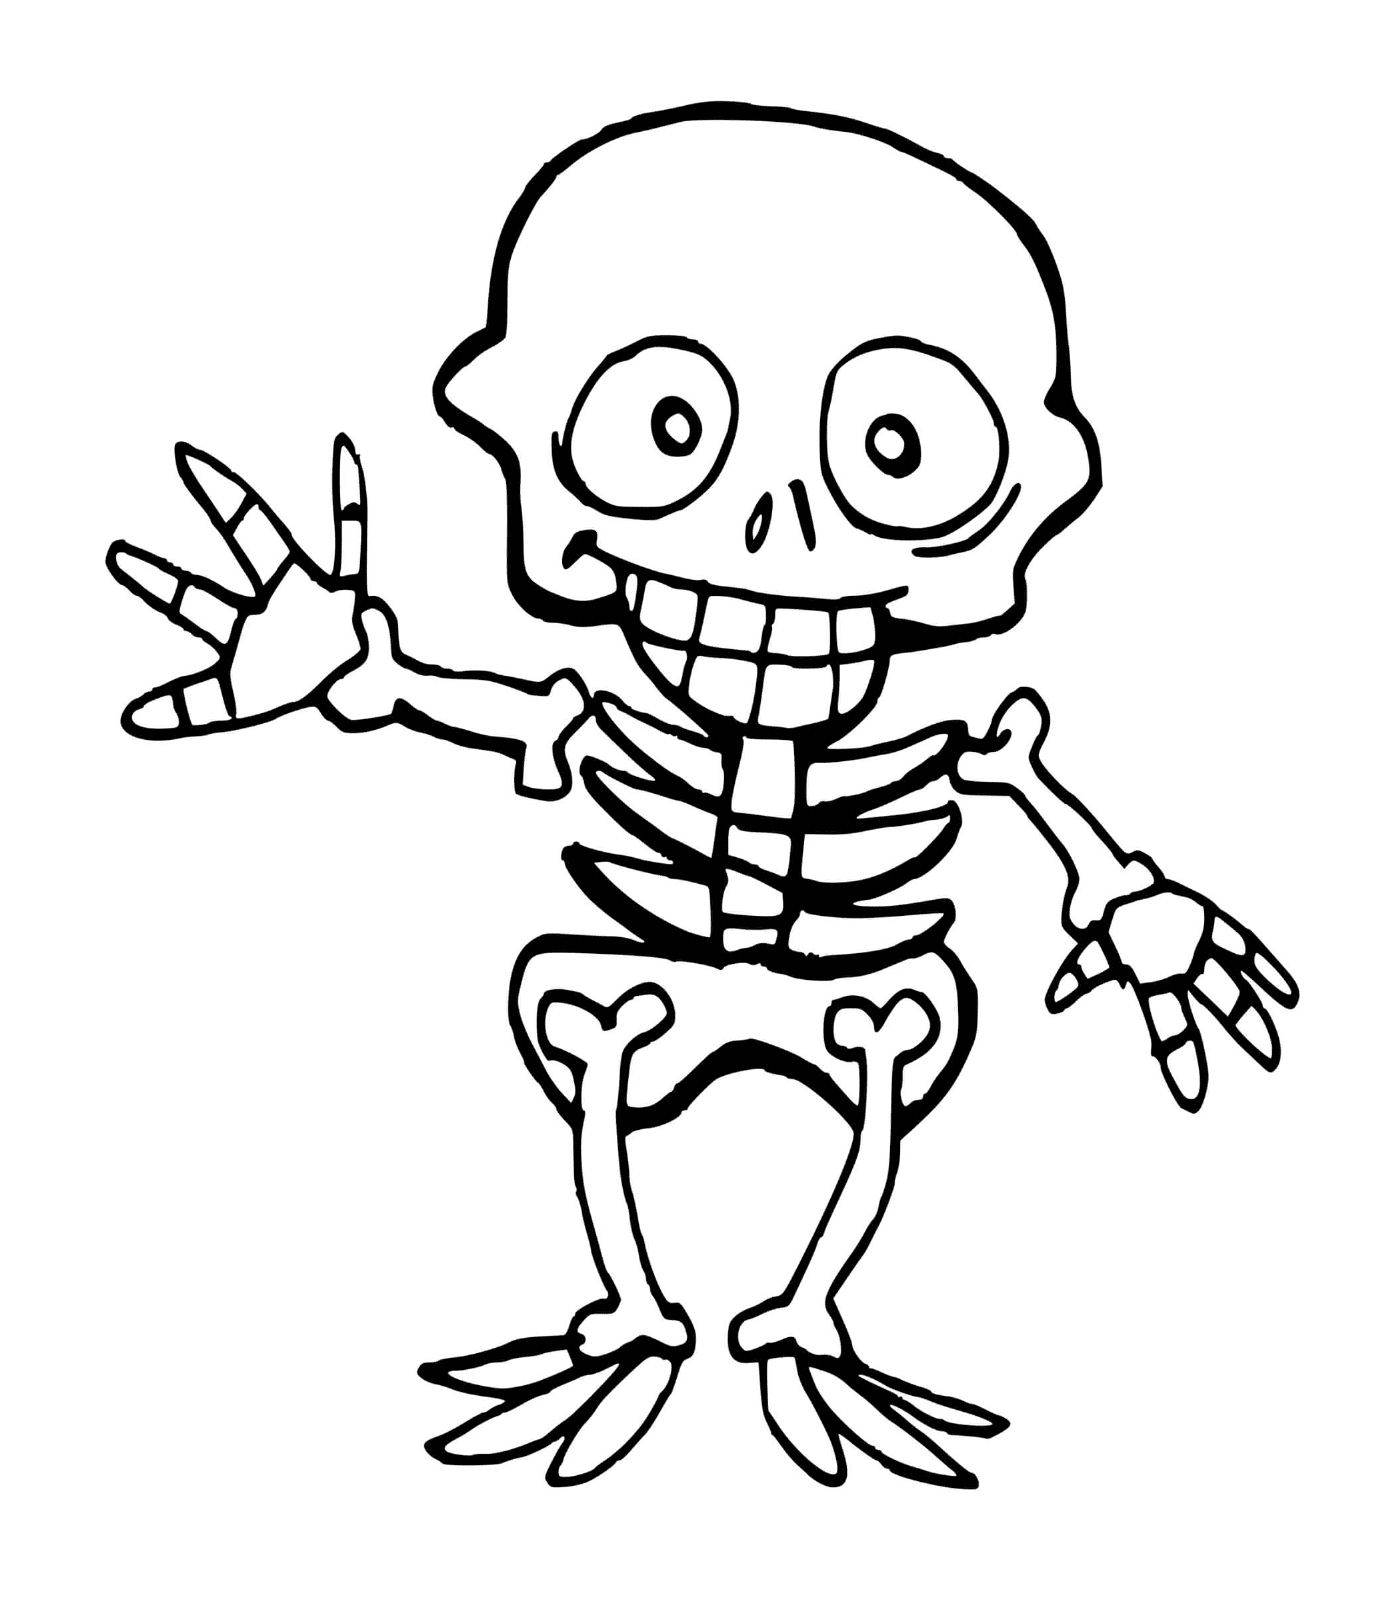  Esqueleto de niño para Halloween, manos arriba 